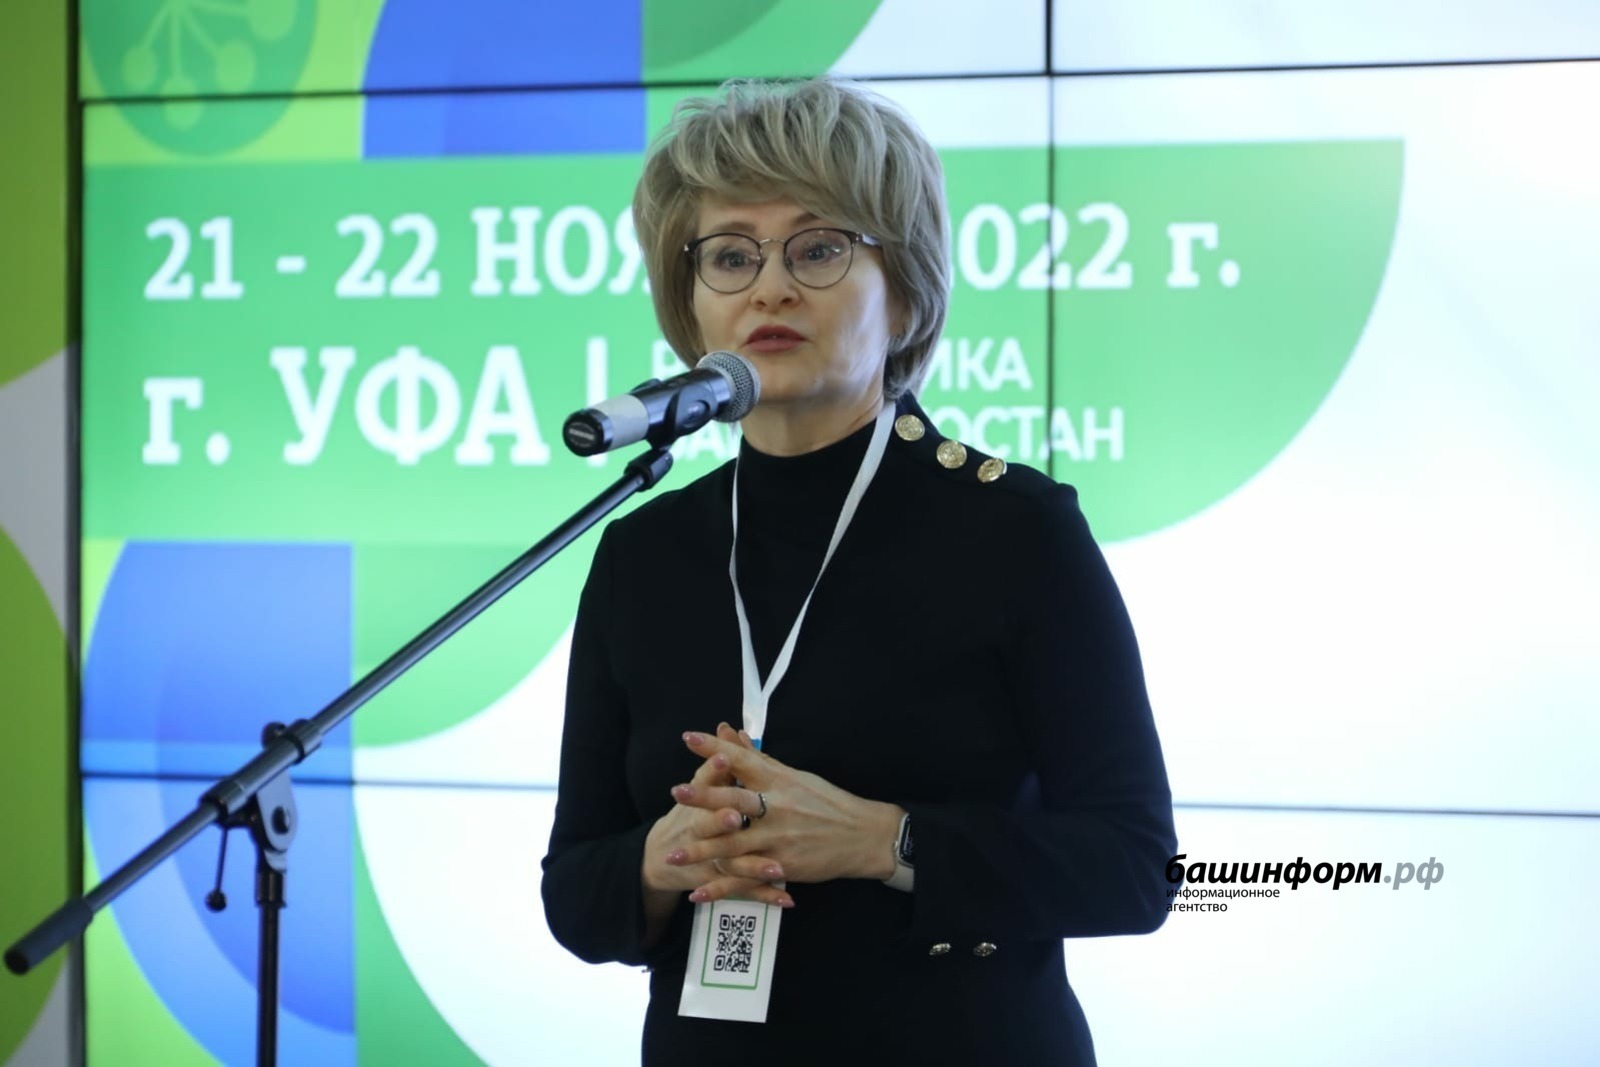 Регионы дополнительно получат 4 млрд рублей на бесплатное питание школьников - Эльвира Аиткулова